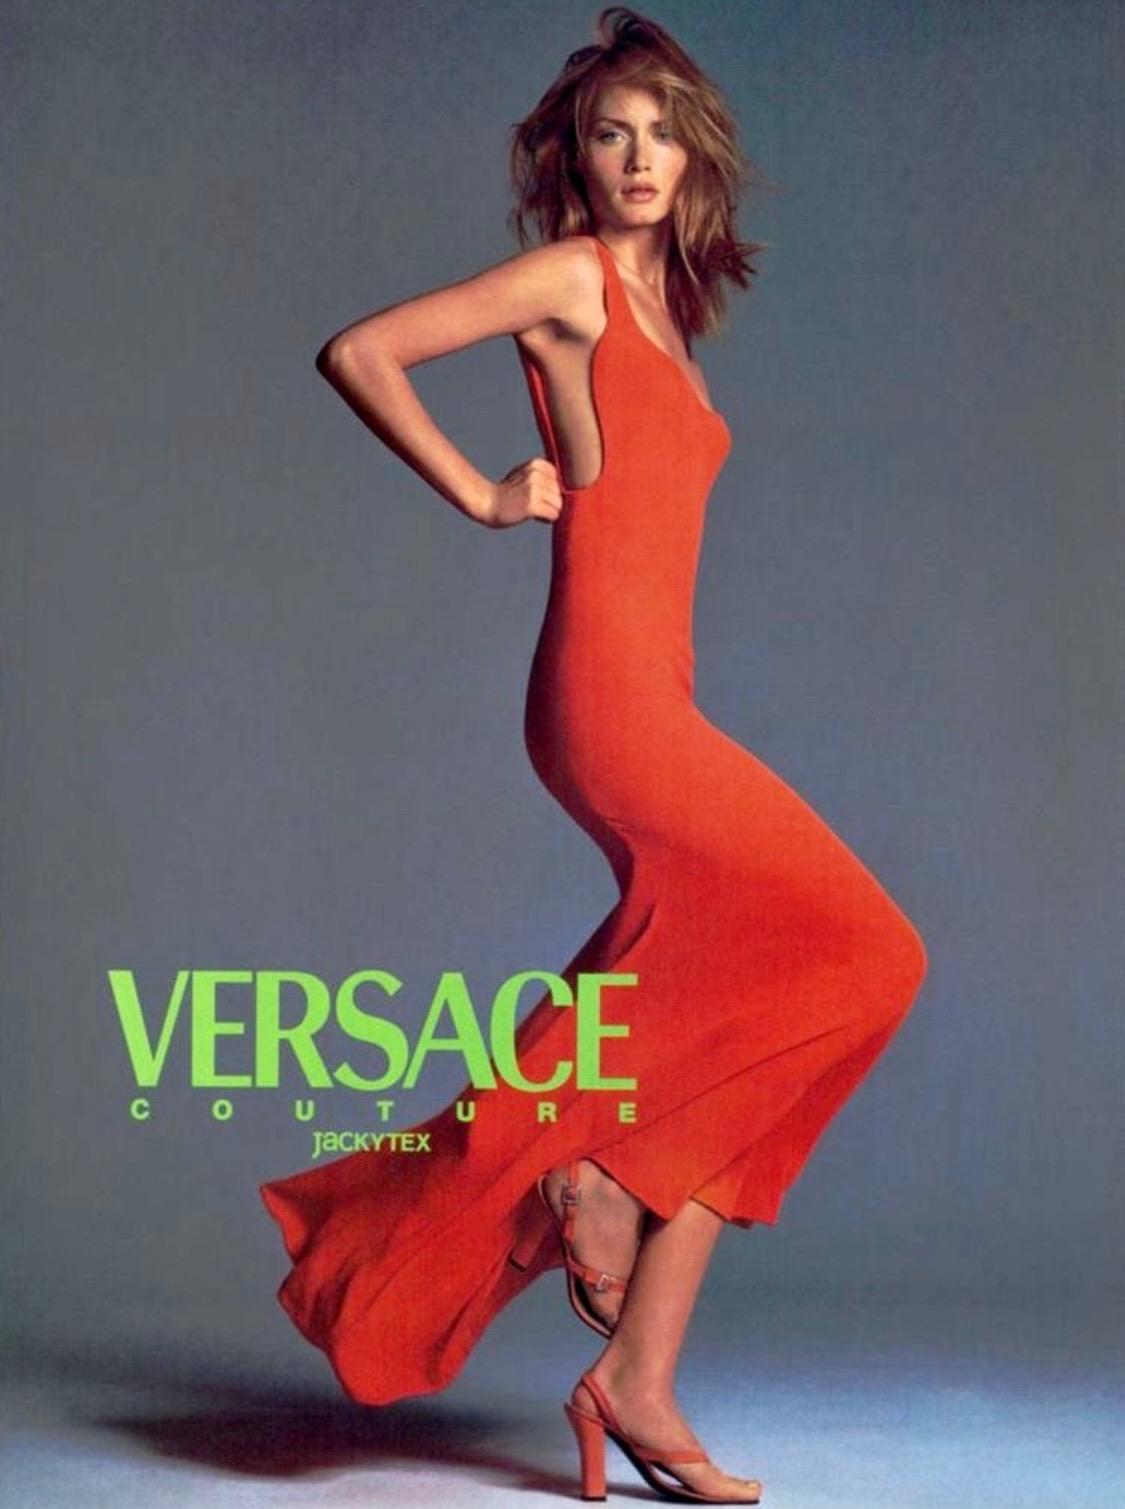 Hier wird ein elegantes, leuchtend orangefarbenes Abendkleid präsentiert, das Gianni Versace für seine Frühjahr/Sommer-Kollektion 1996 entworfen hat. Dieses Stück wurde von Helena Christensen als Look Nummer 64 auf dem Laufsteg getragen, von Amber